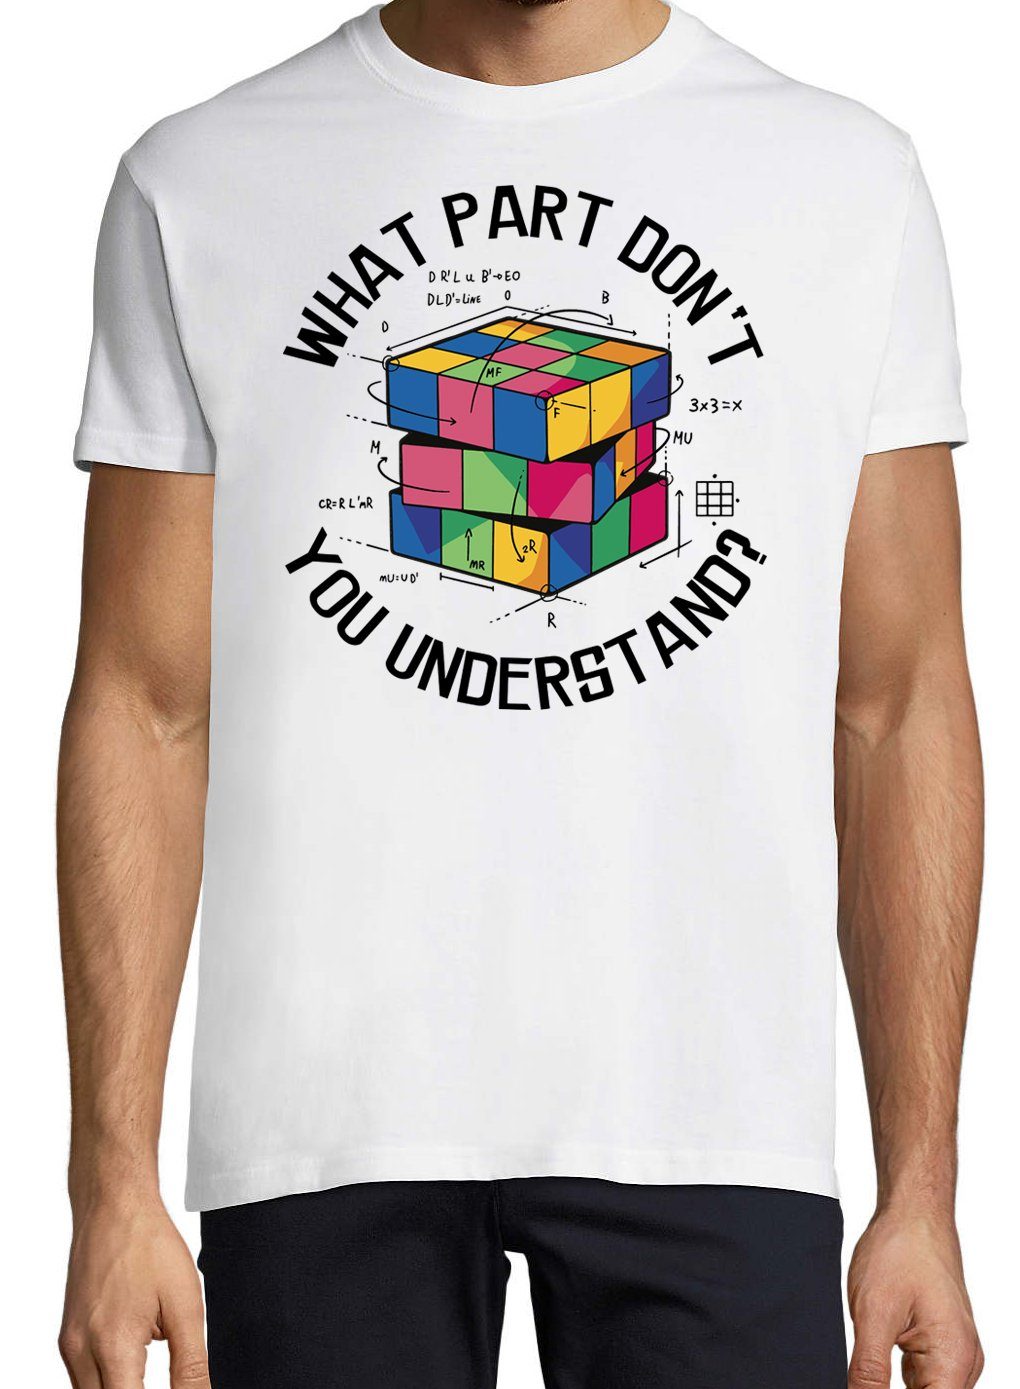 Frontdruck Youth Designz Herren T-Shirt Zauberwürfel Trendigem Weiss mit Shirt don't you Understand What Part